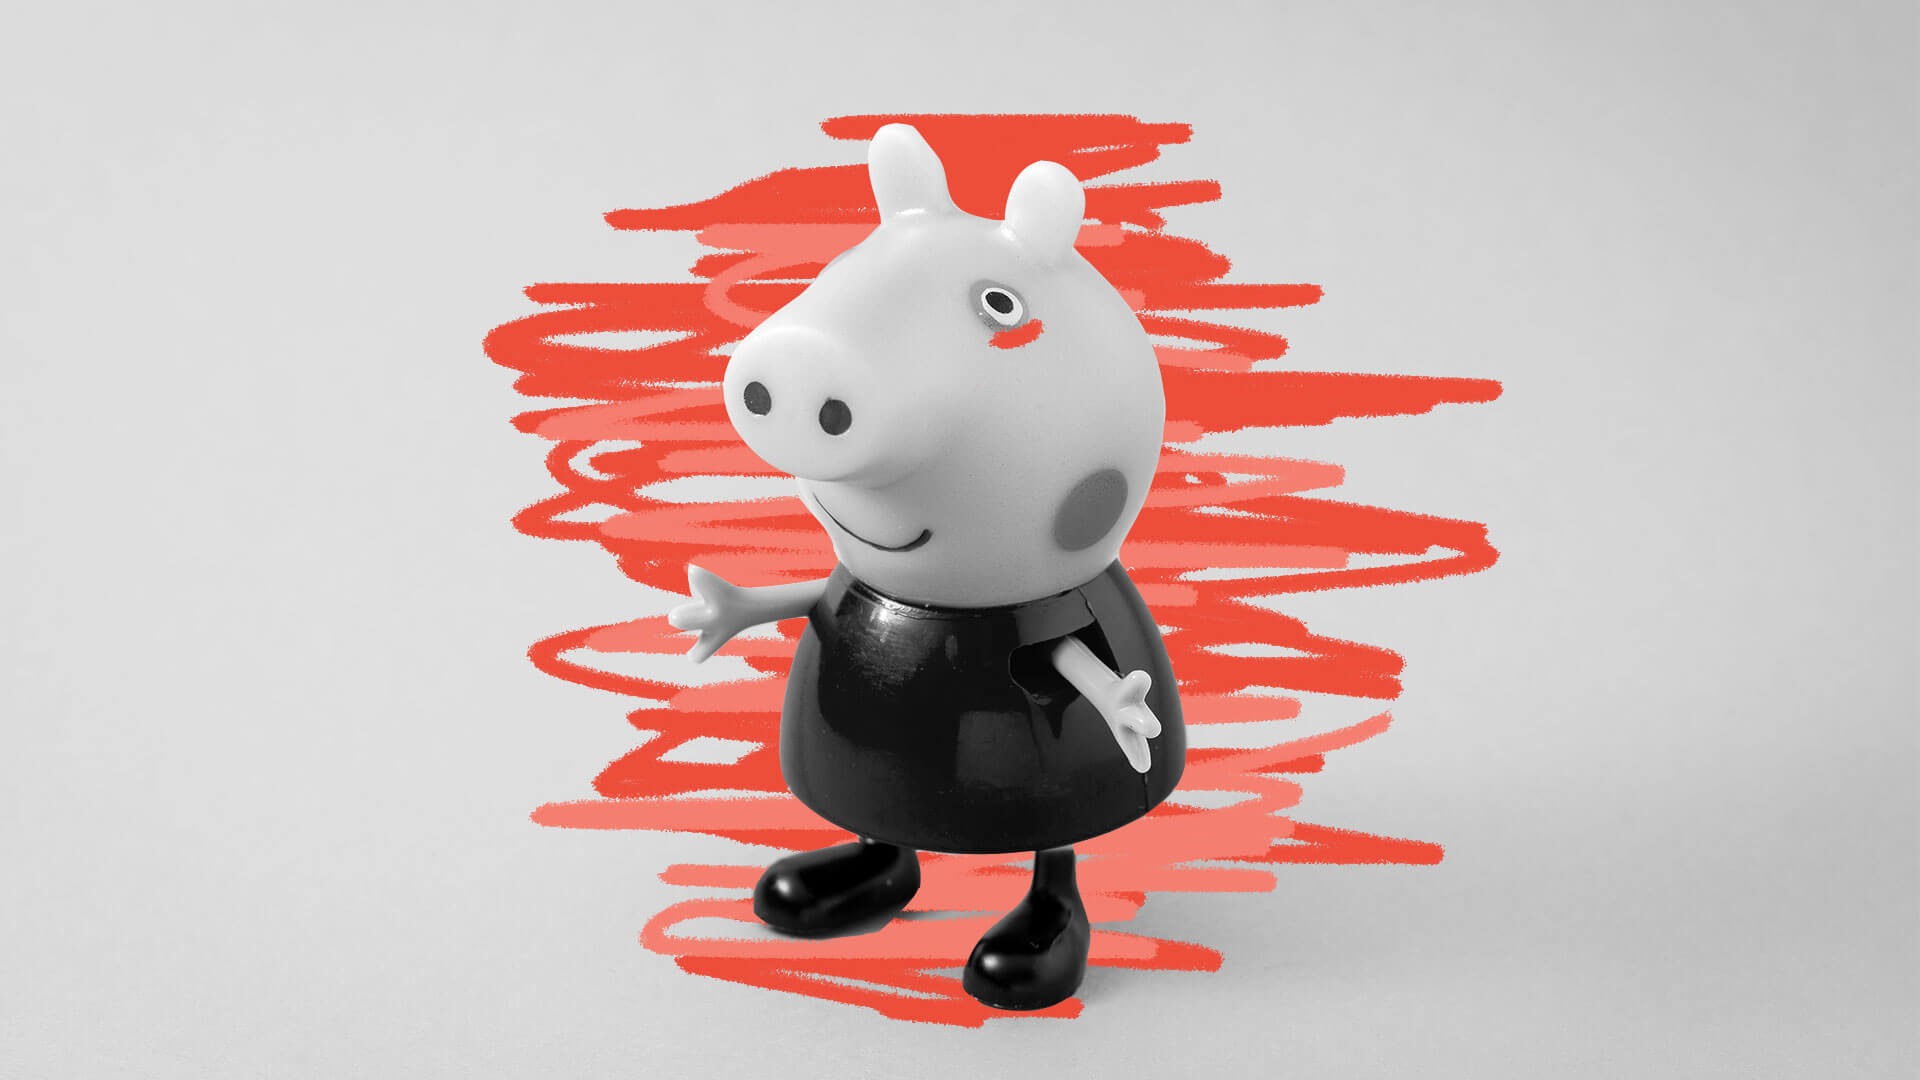 Parece a Peppa Pig, mas não é: atenção aos vídeos falsos na internet